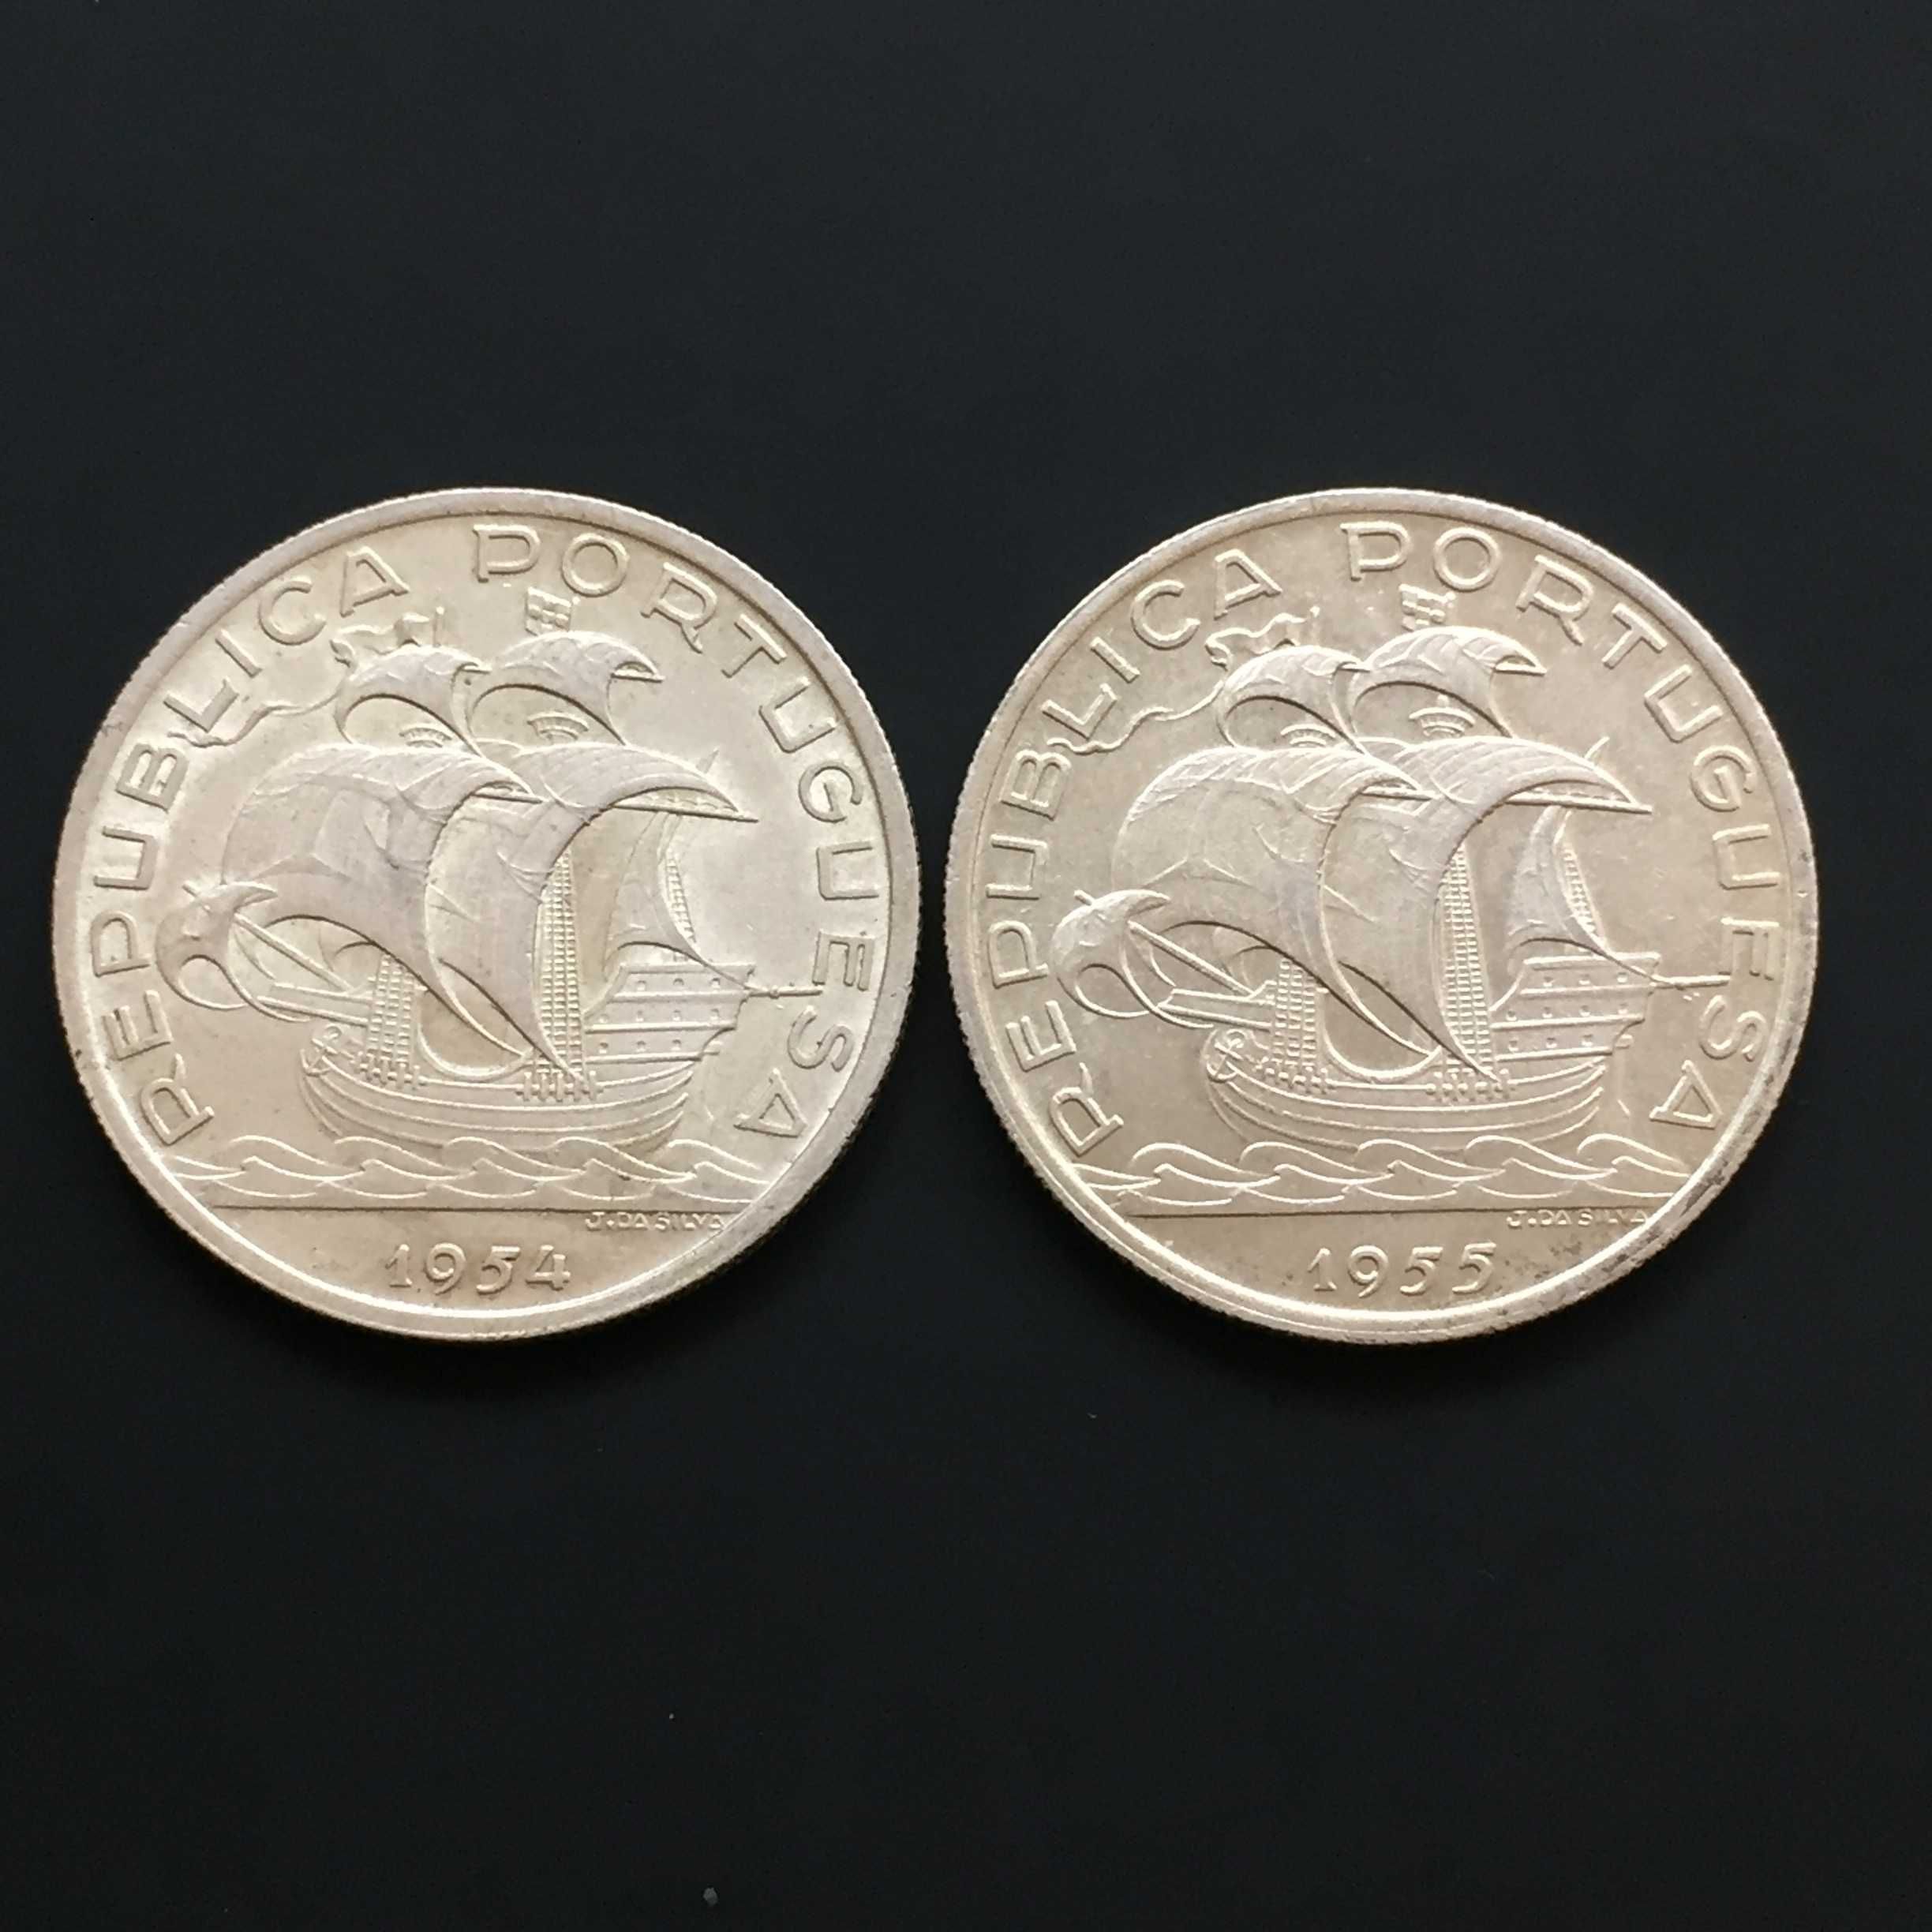 10 escudos 1954 e 1955 - lote de 2 moedas - prata